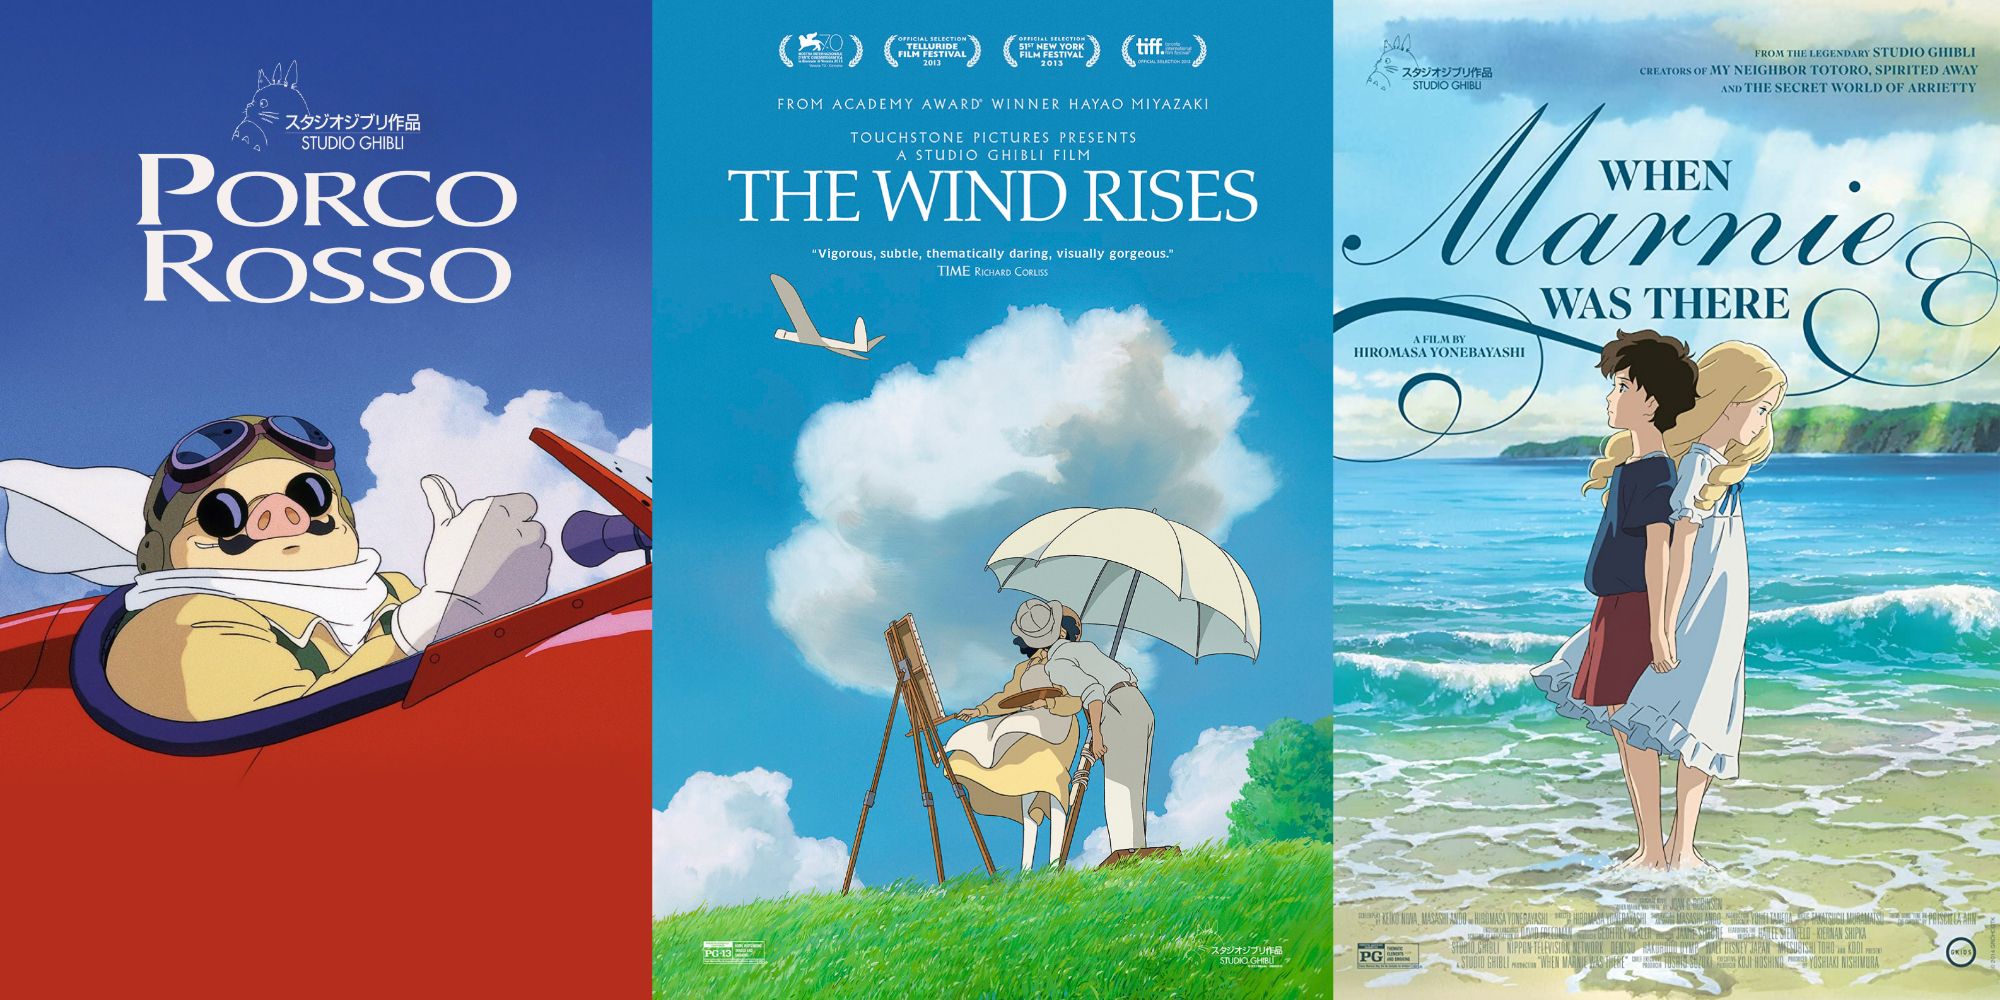 The Best Hayao Miyazaki Movies According to Rotten Tomatoes - The